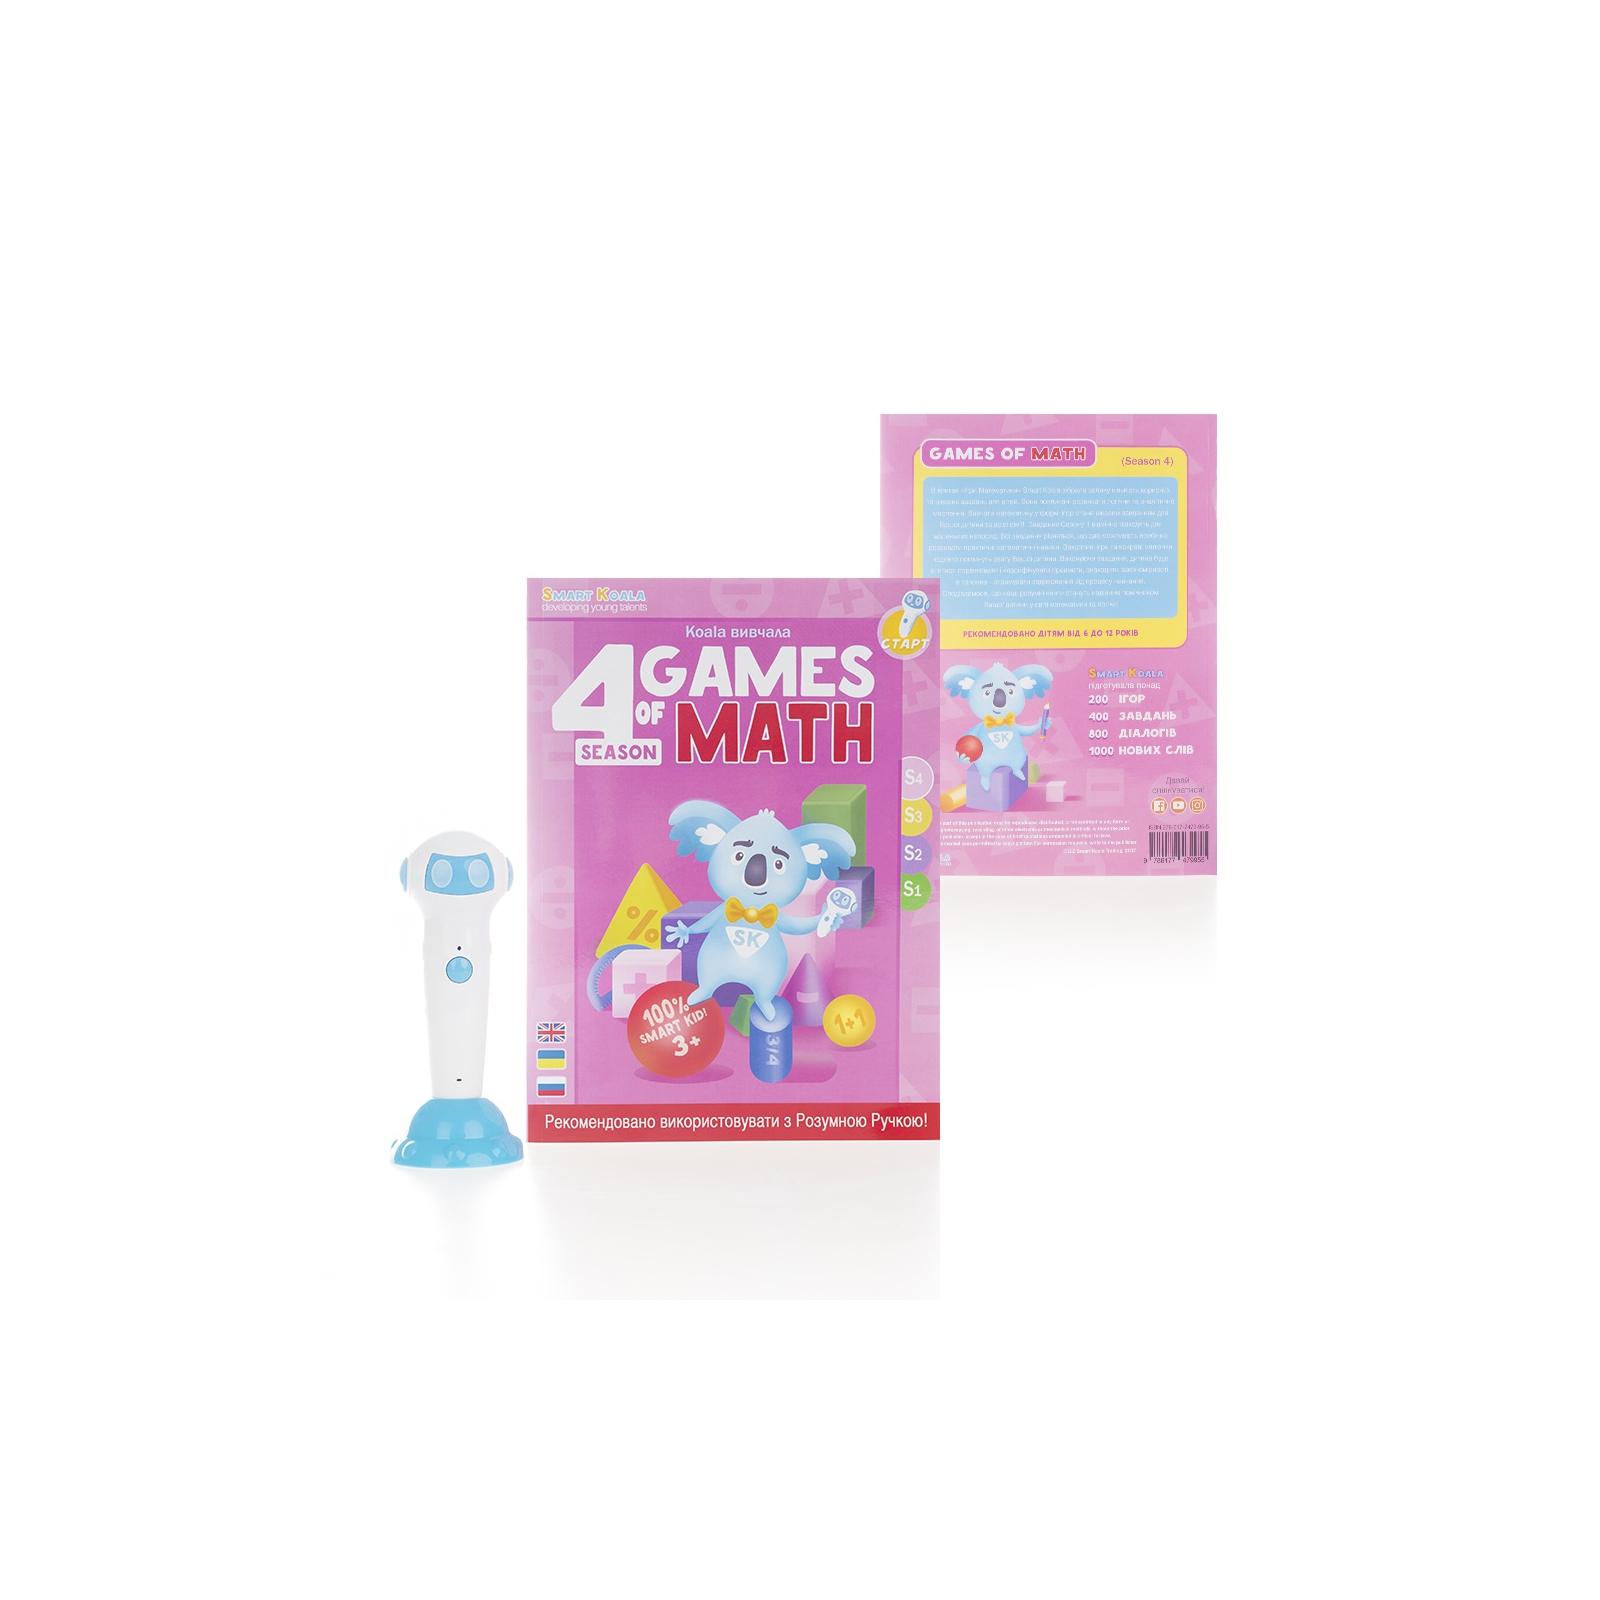 Интерактивная игрушка Smart Koala развивающая книга The Games of Math (Season 4) №4 (SKBGMS4) изображение 2